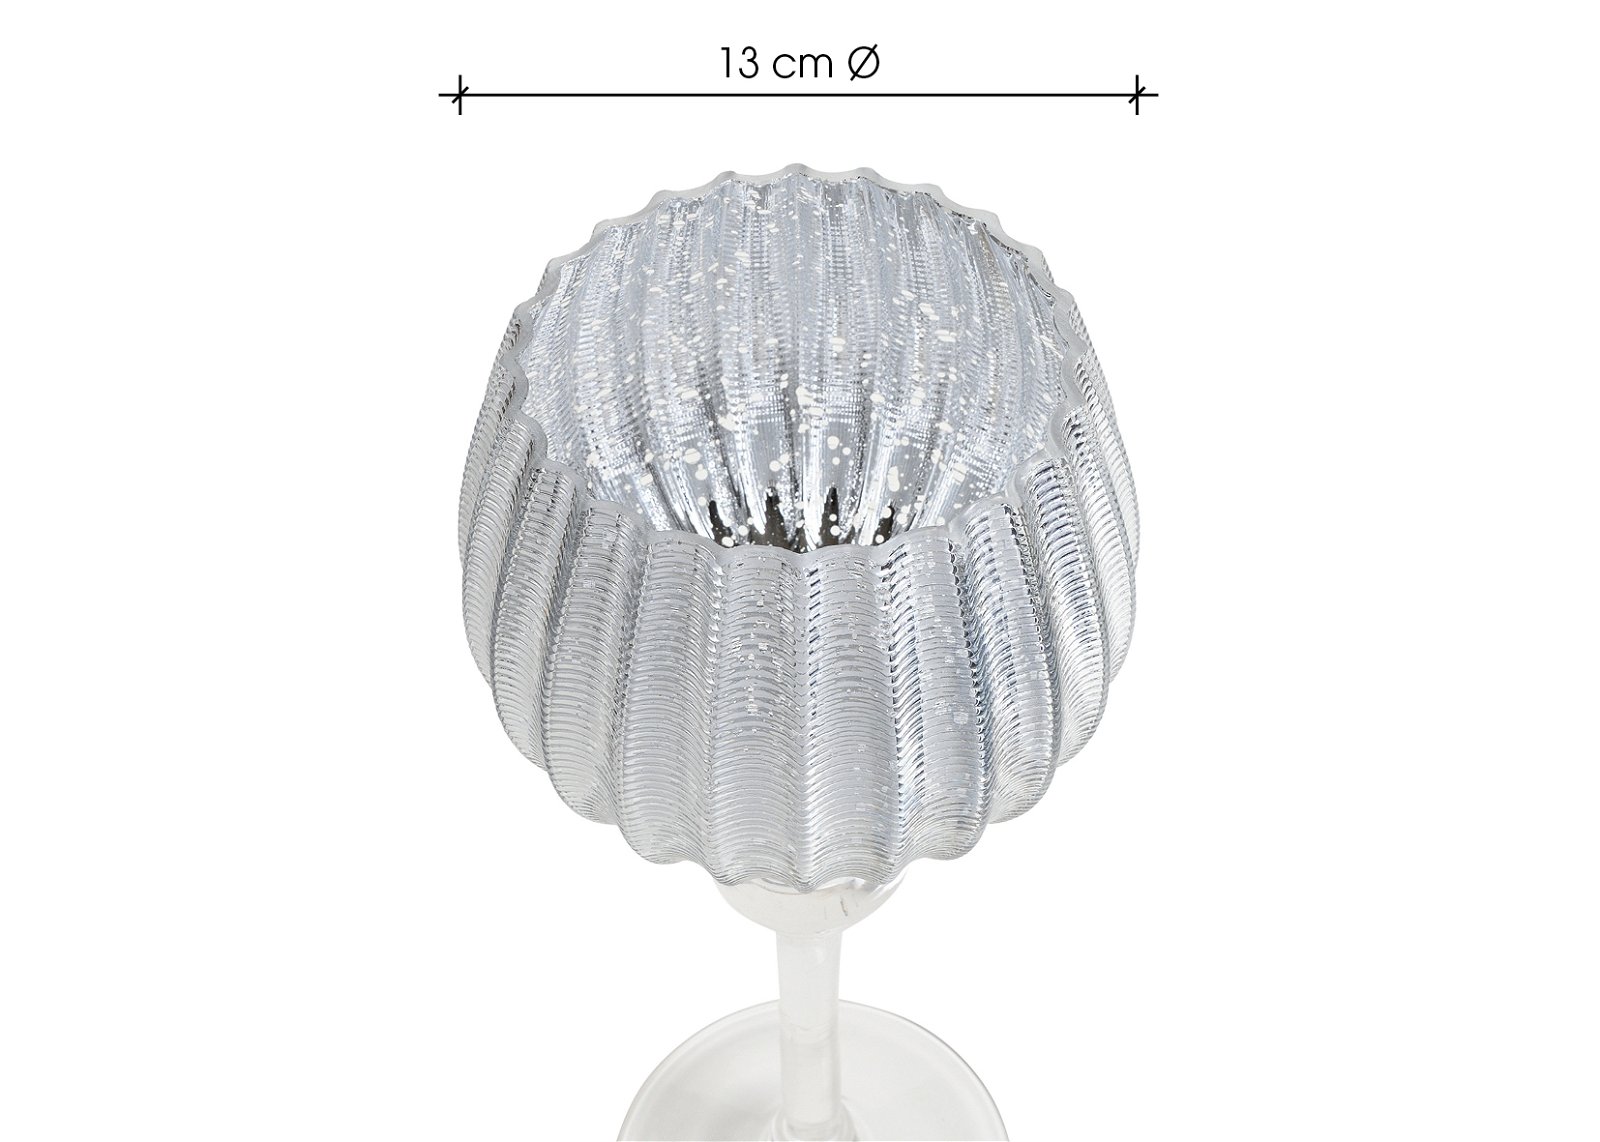 Windlicht set kelk geribbeld, 30, 35, 40 cm x Ø13cm van glas zilver set van 3